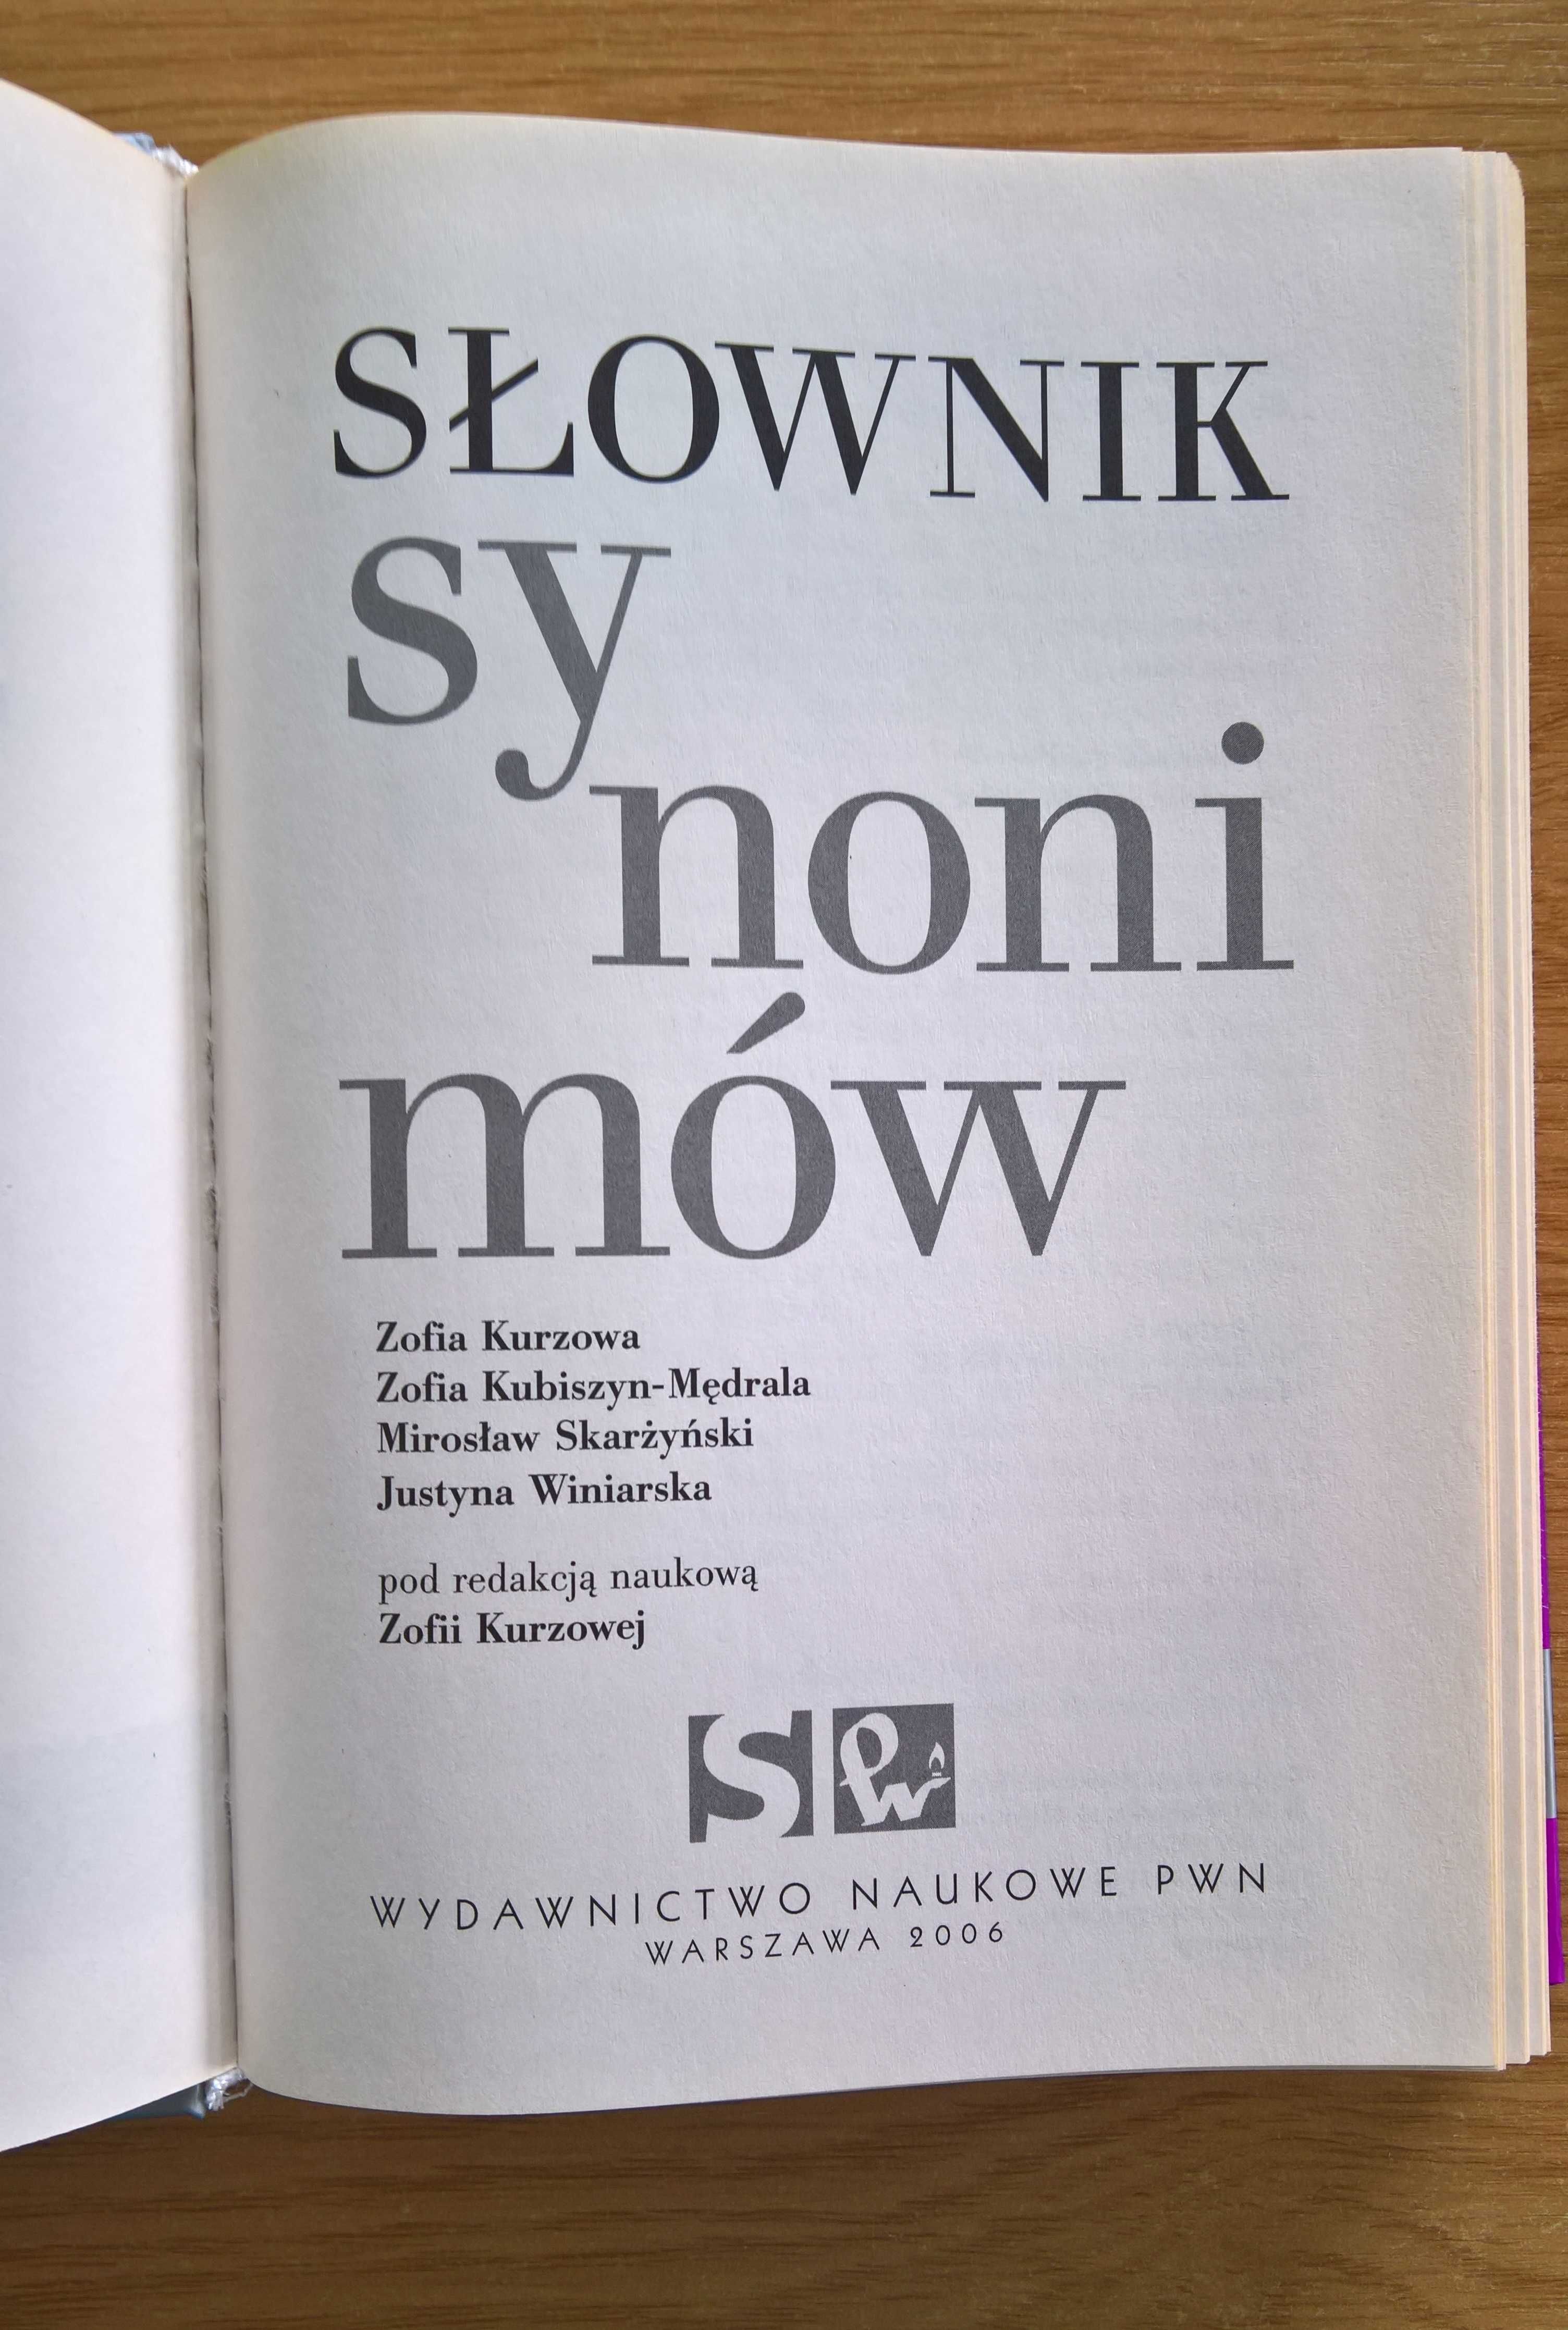 Słownik synonimów wyd. naukowe PWN